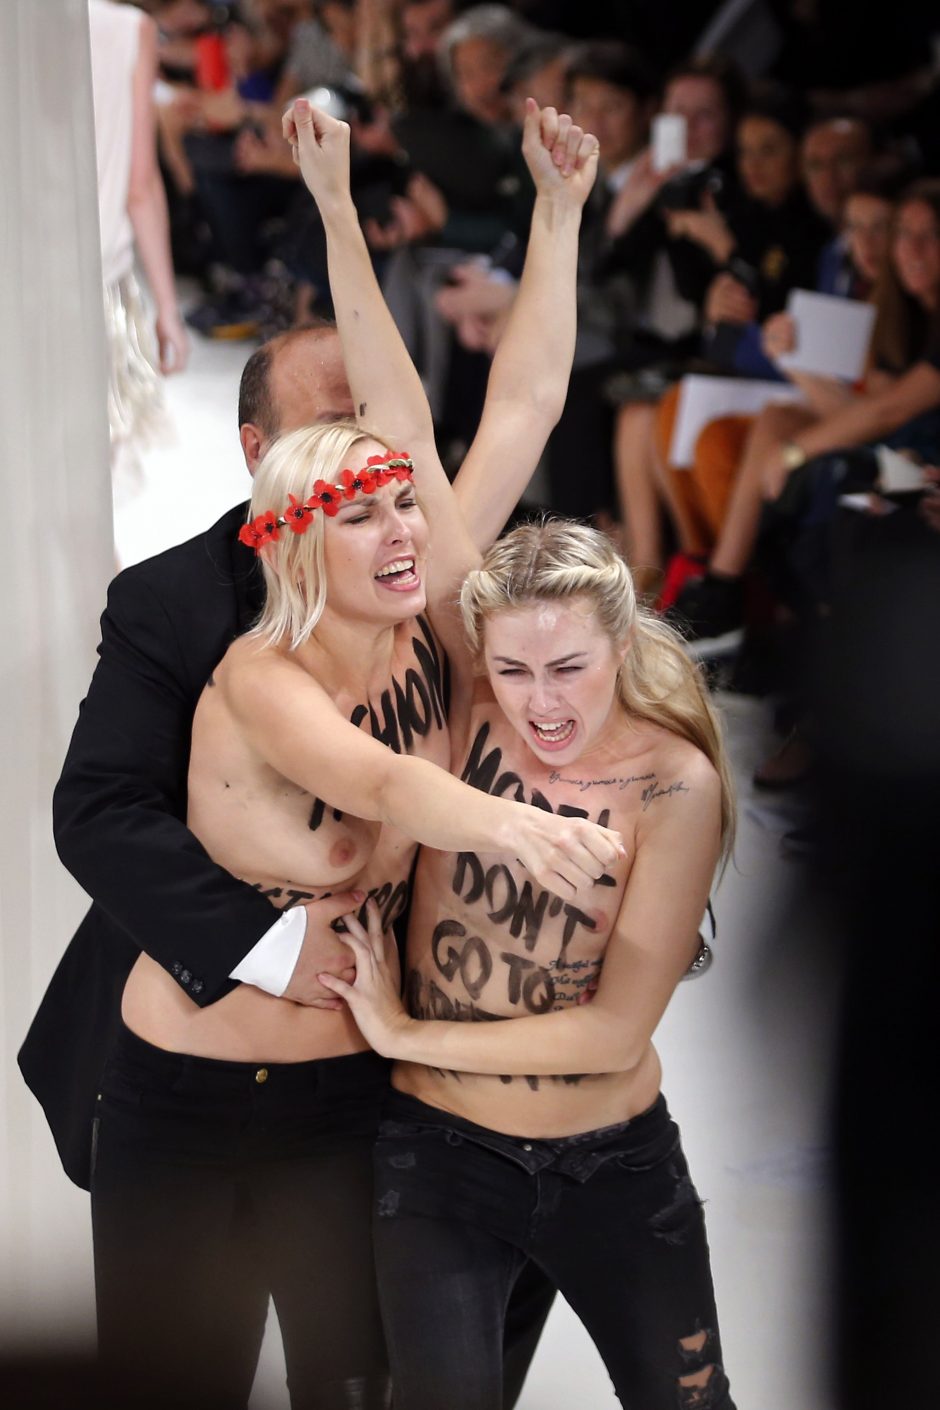 Paryžiaus madų savaitėje - „Femen“ nuogalių išpuolis